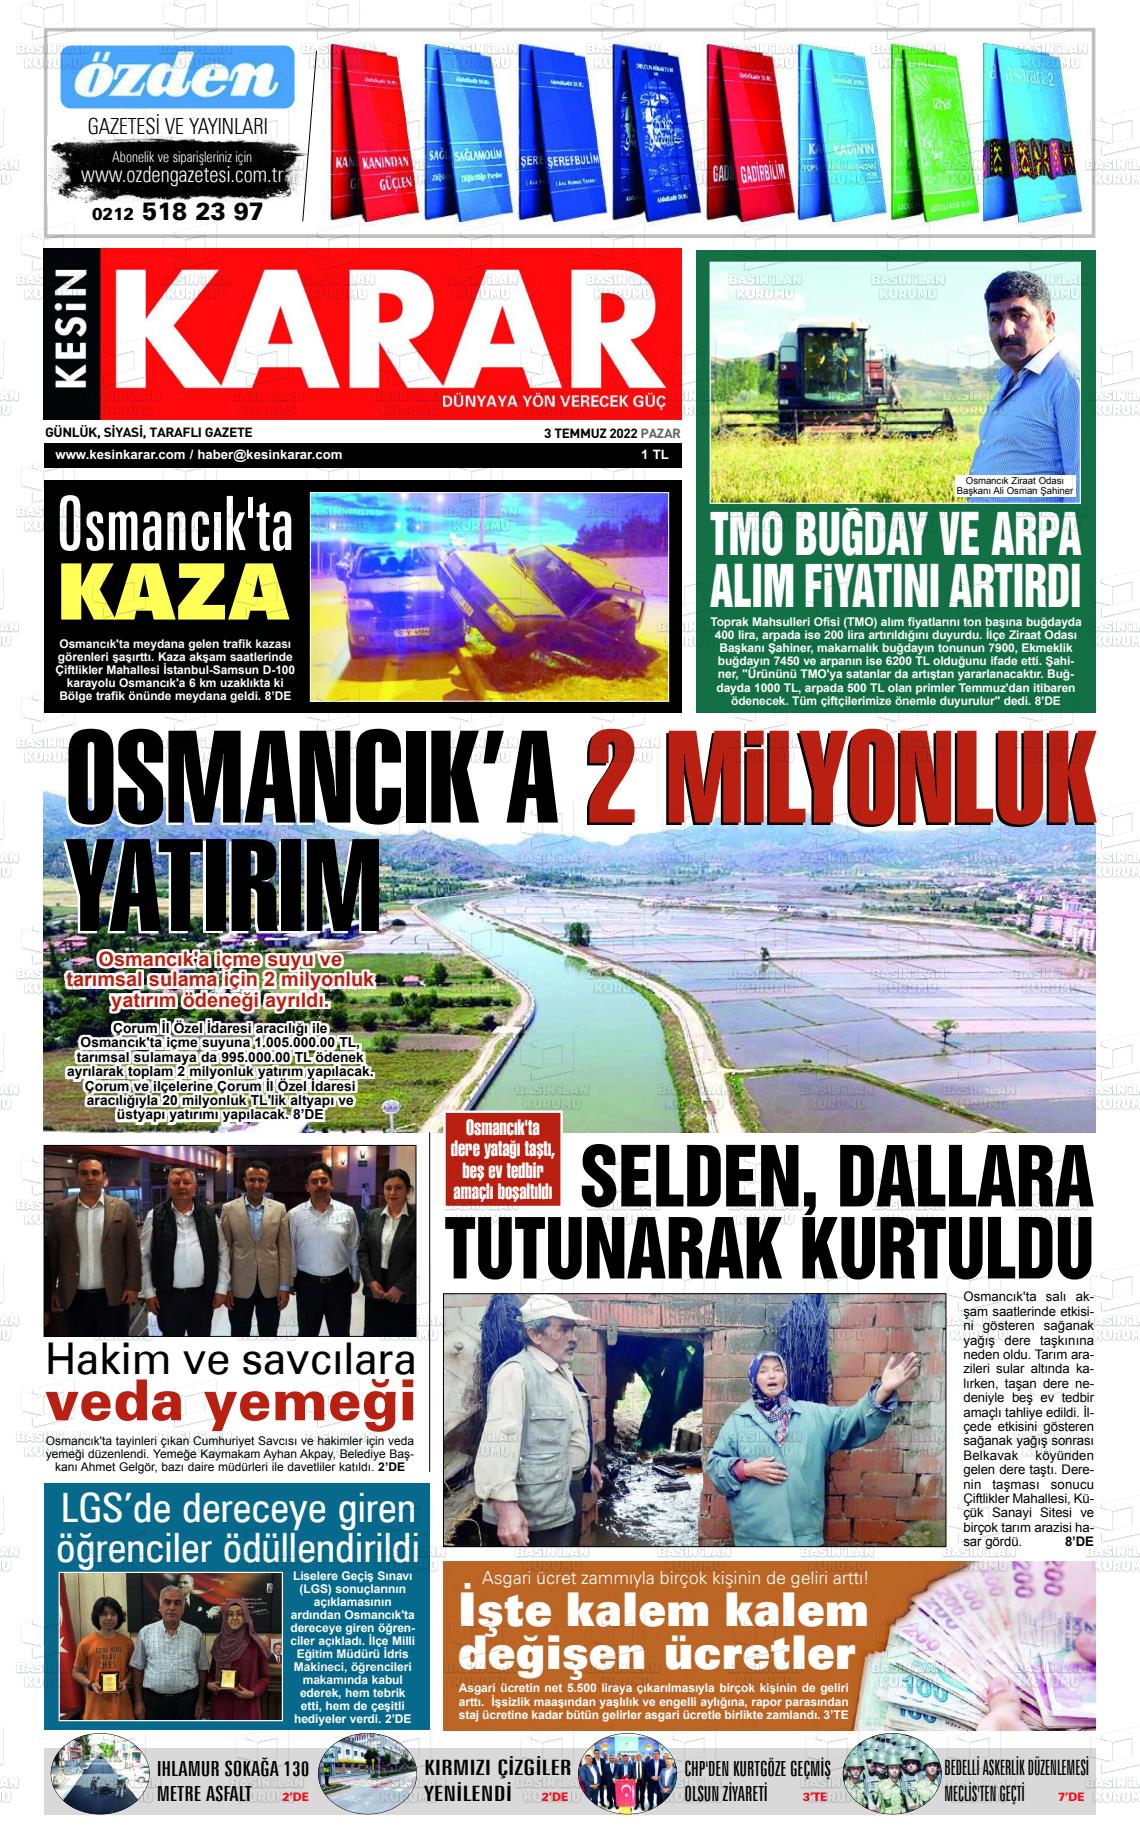 03 Temmuz 2022 Kesin Karar Gazete Manşeti